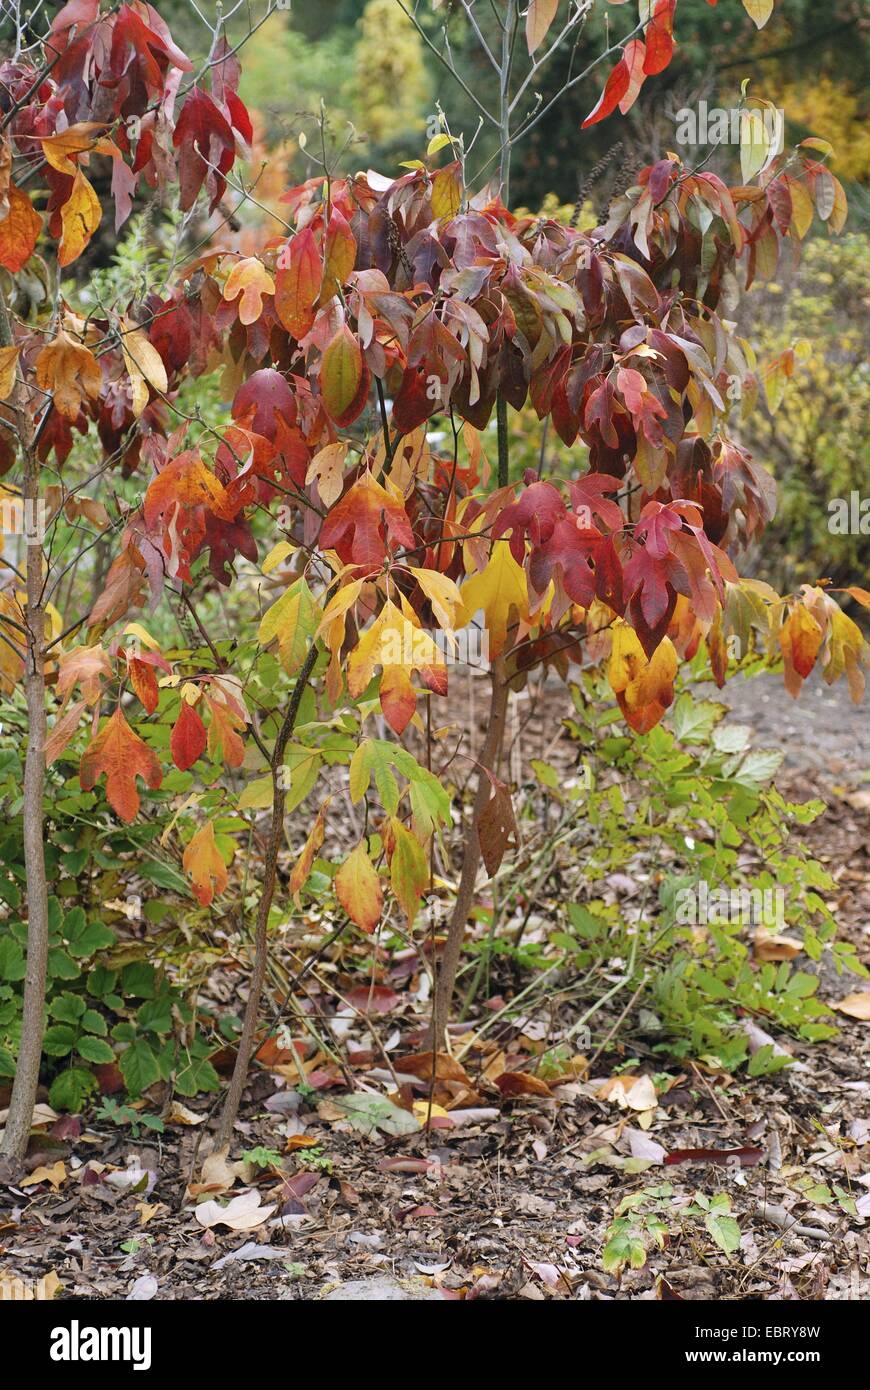 sassafras (Sassafras albidum), with autumn leaves Stock Photo